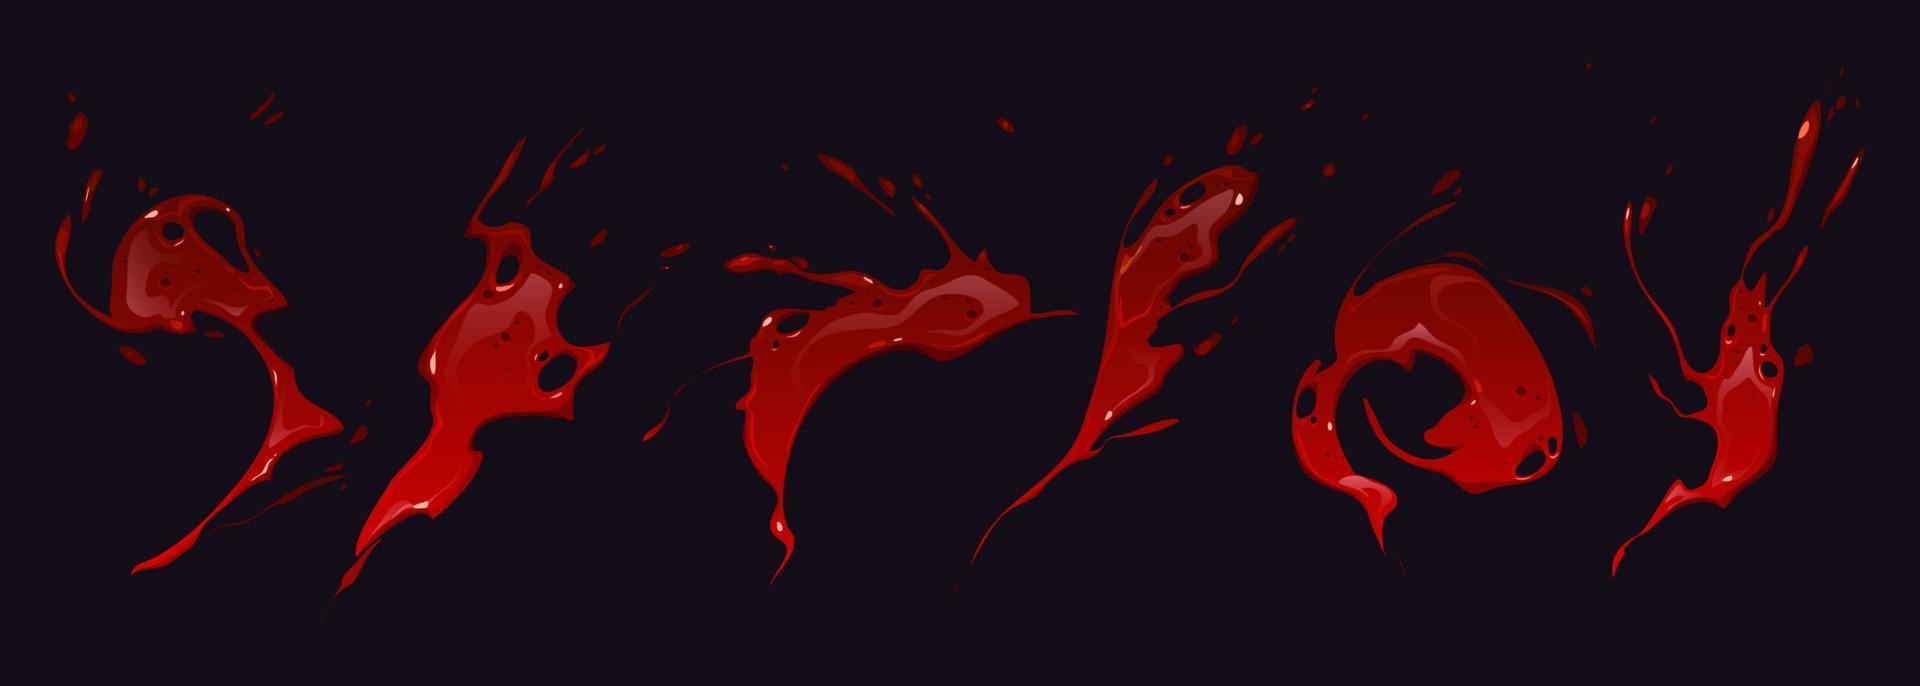 animación de salpicaduras de sangre, hoja de sprite de dibujos animados fx vector